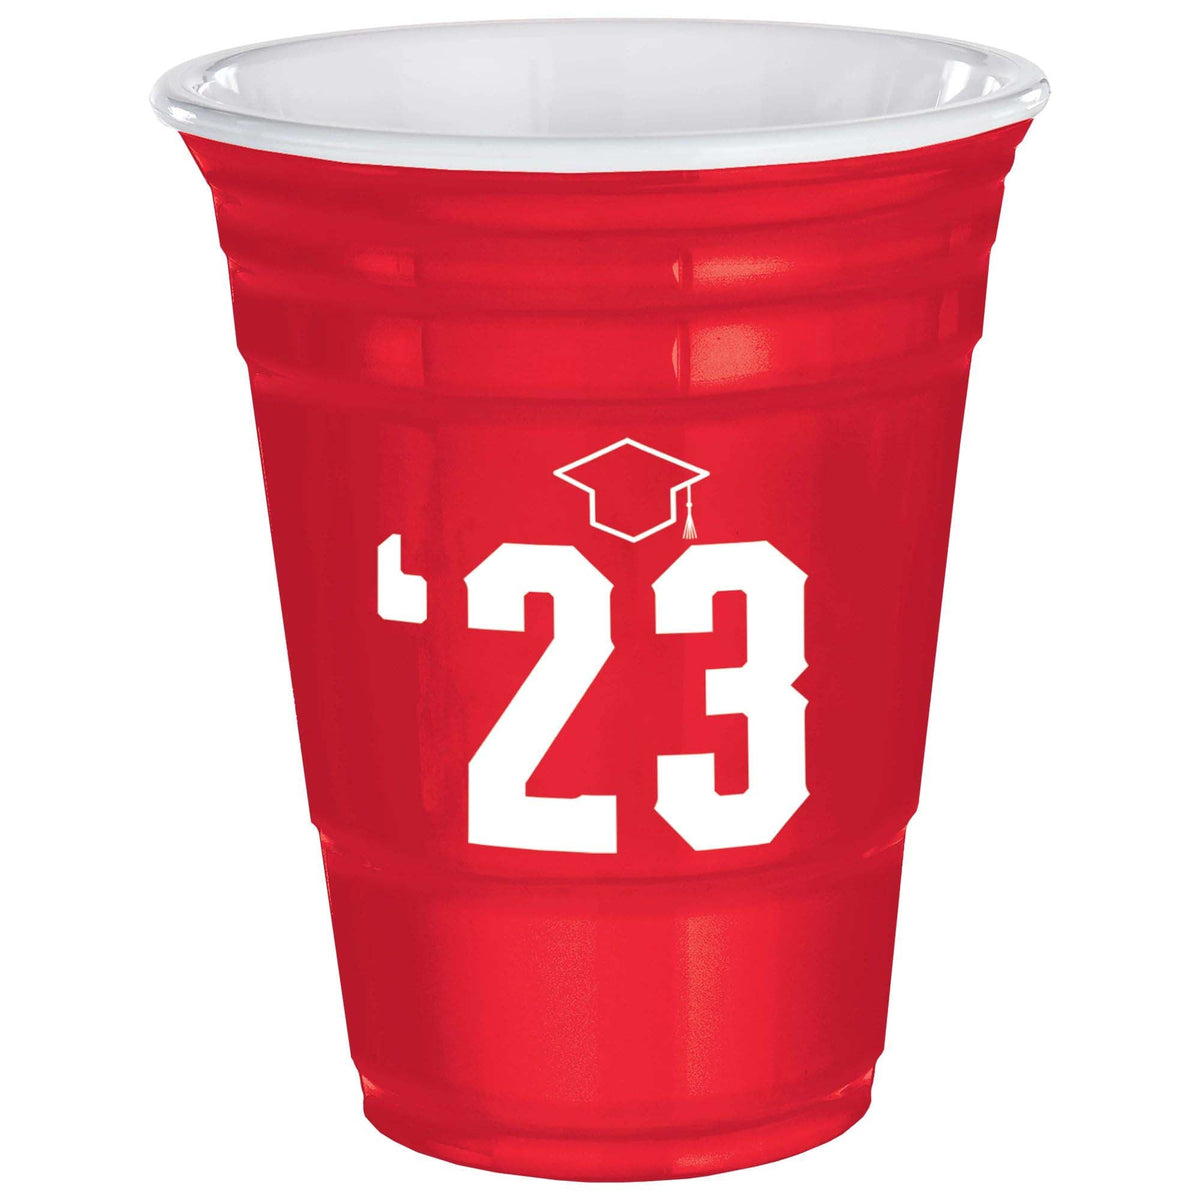 AMSCAN CA Graduation 2023 Graduation Red Plastic Cups, 32 Oz, 1 Count